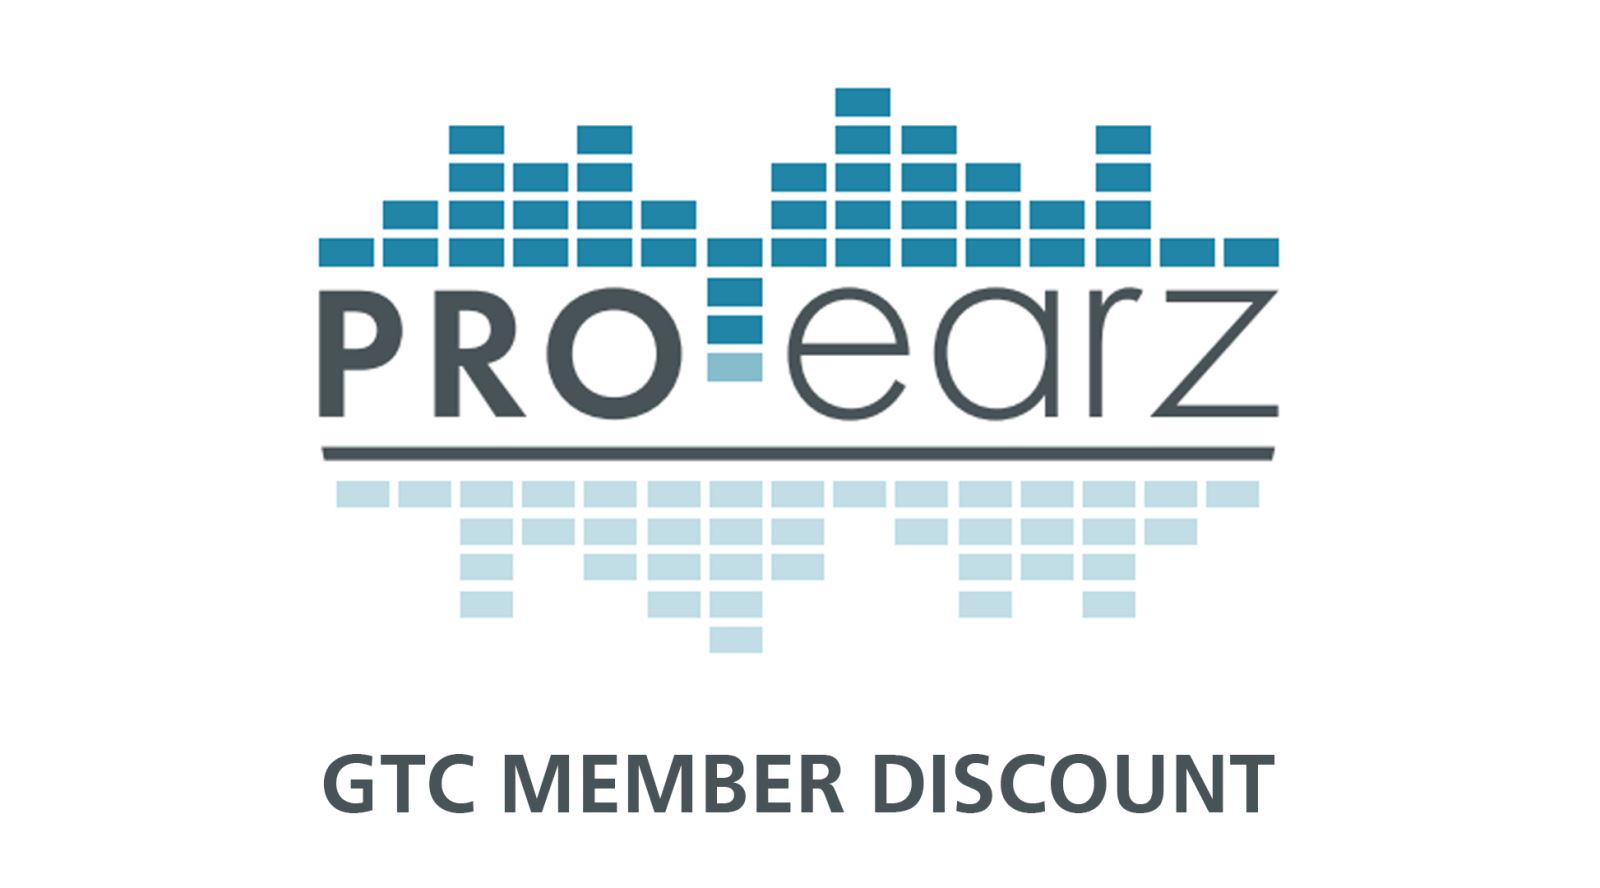 Pro Earz Member Discount Offer